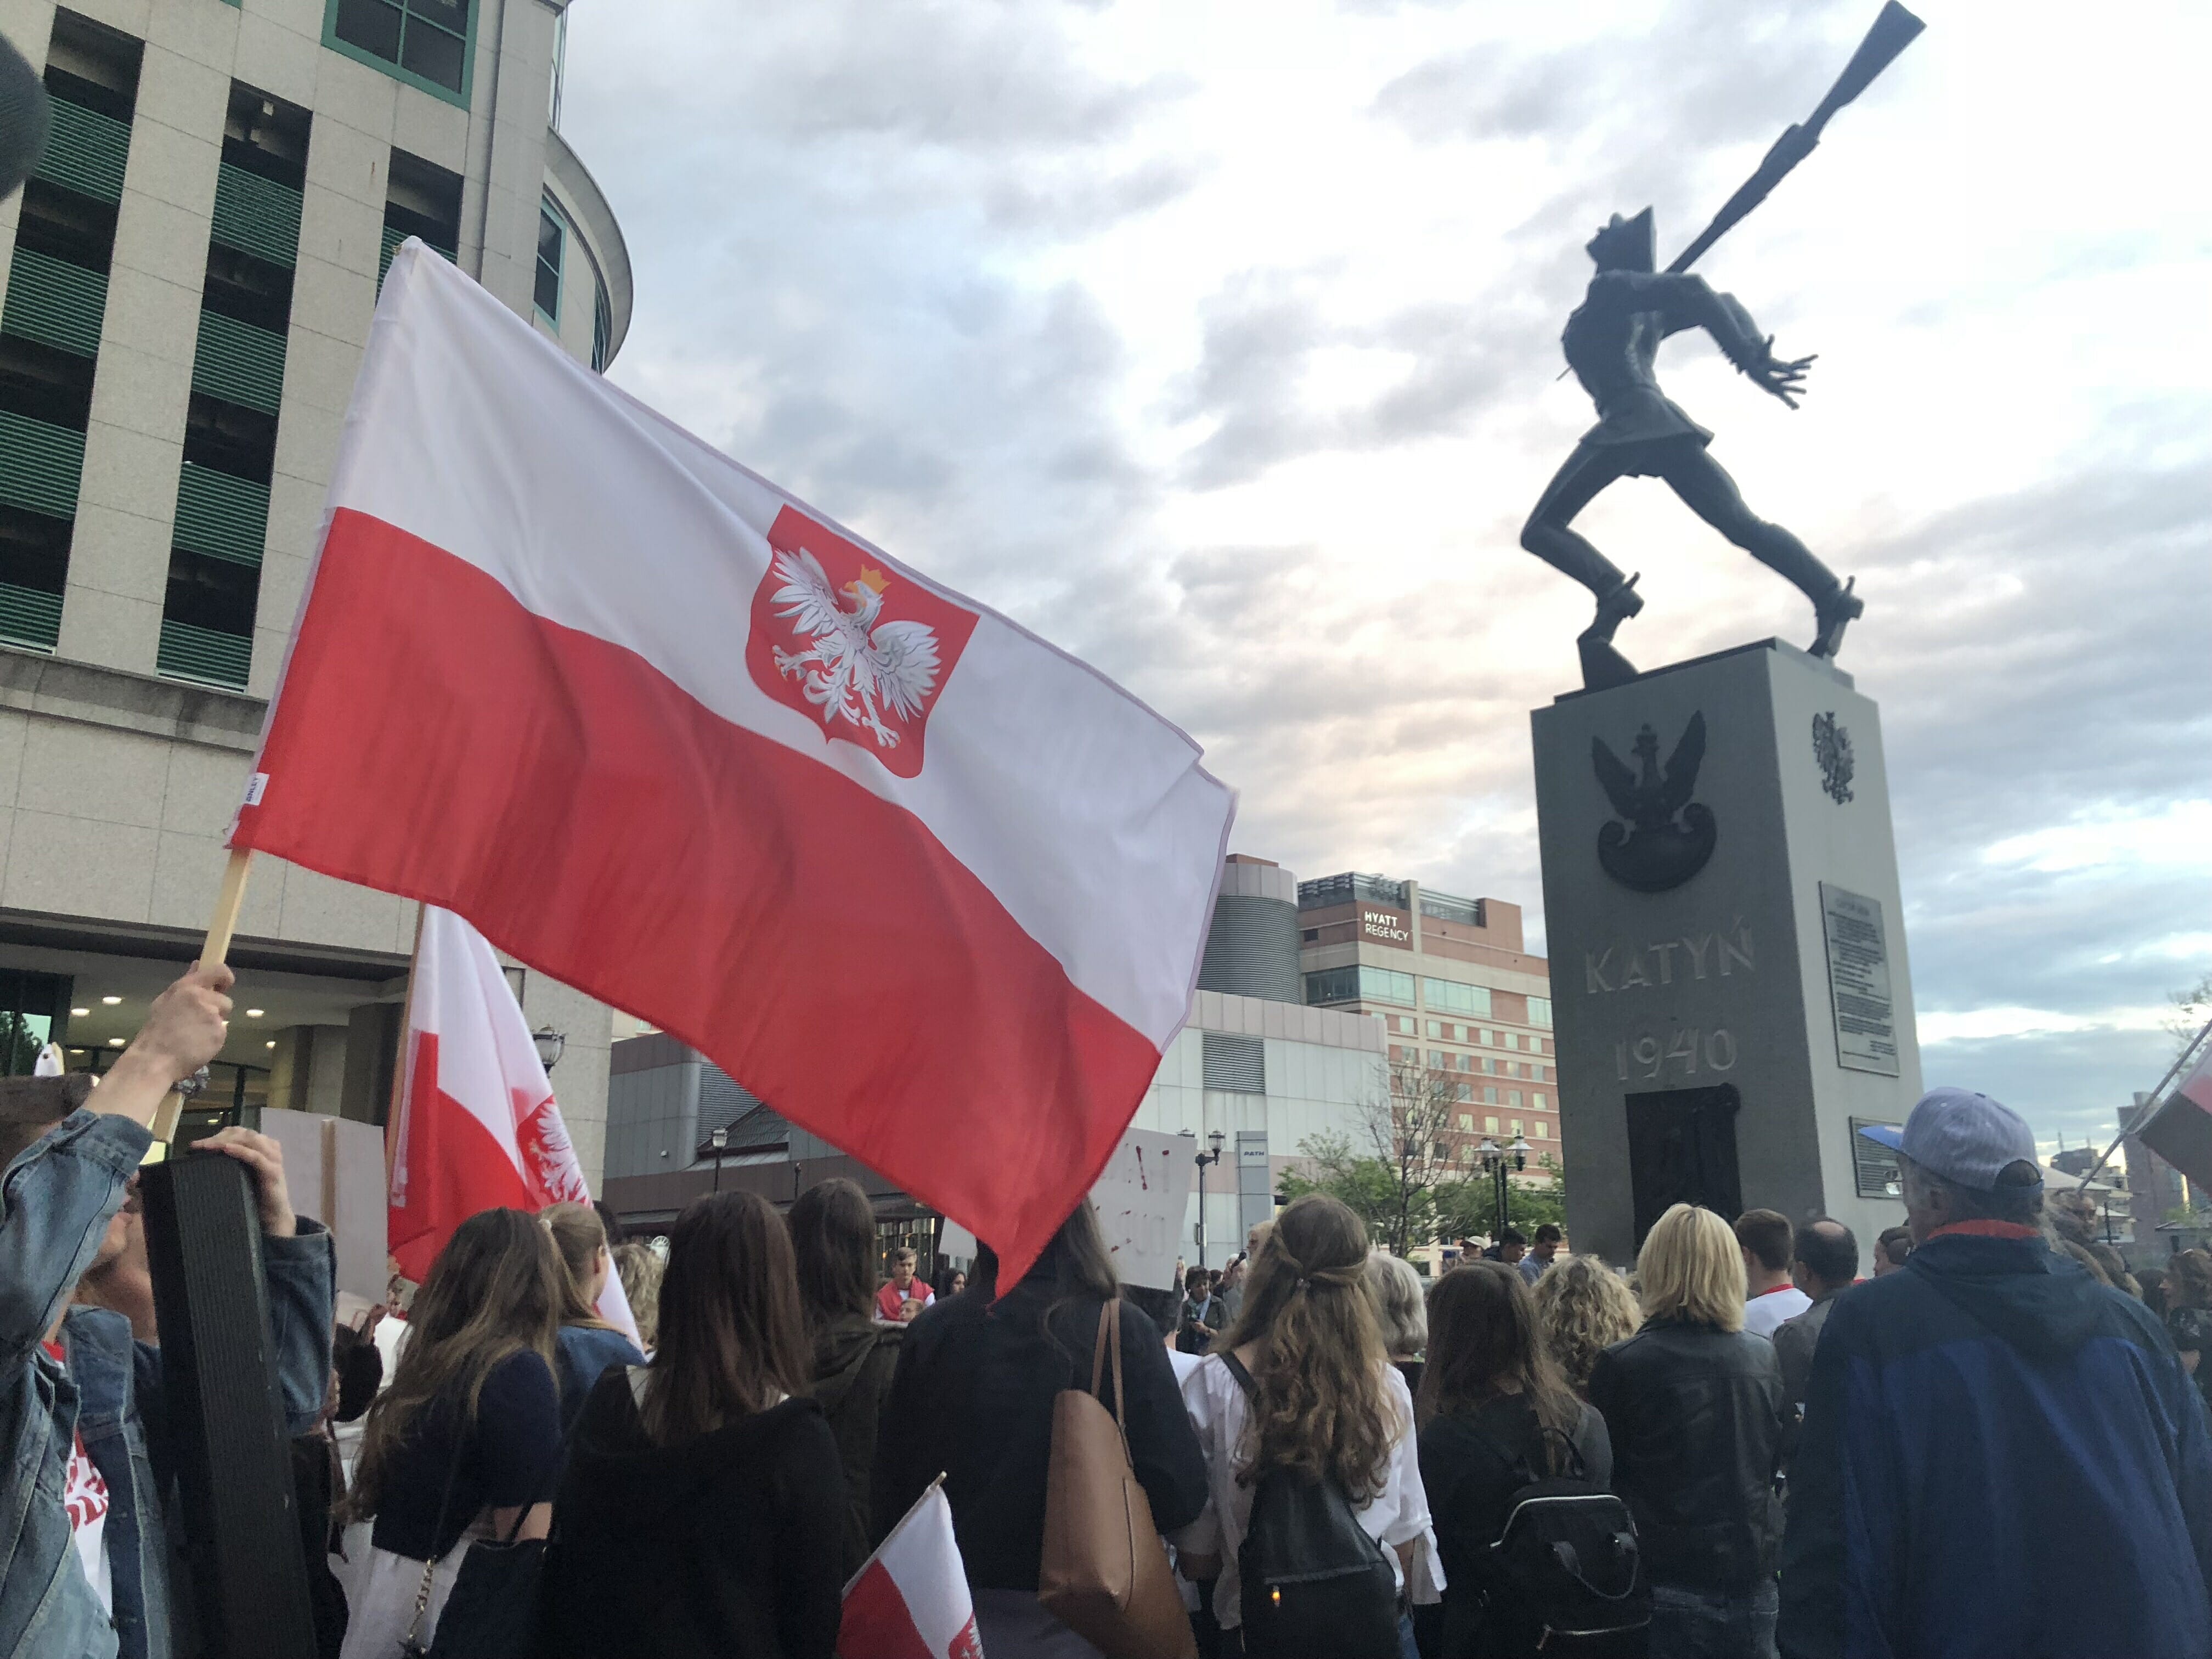 Polonia podzielona w sprawie przeniesienia Pomnika Katyń 1940 - posłuchaj wątpliwości Polonii